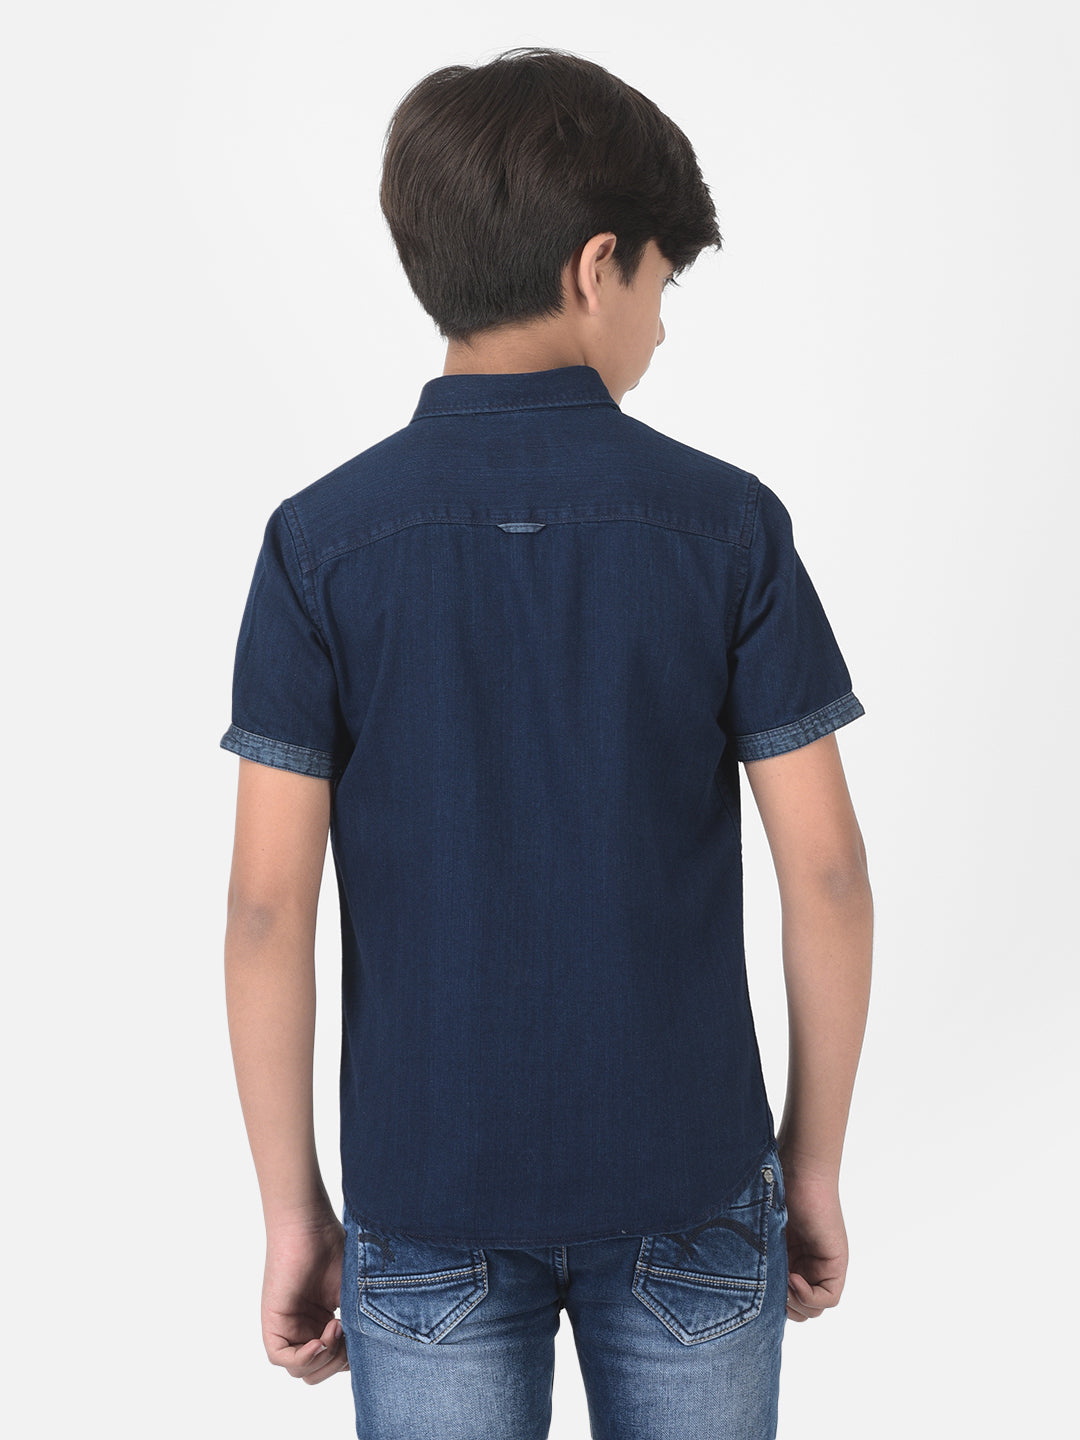 Navy Blue Denim Shirt - Boys Shirts